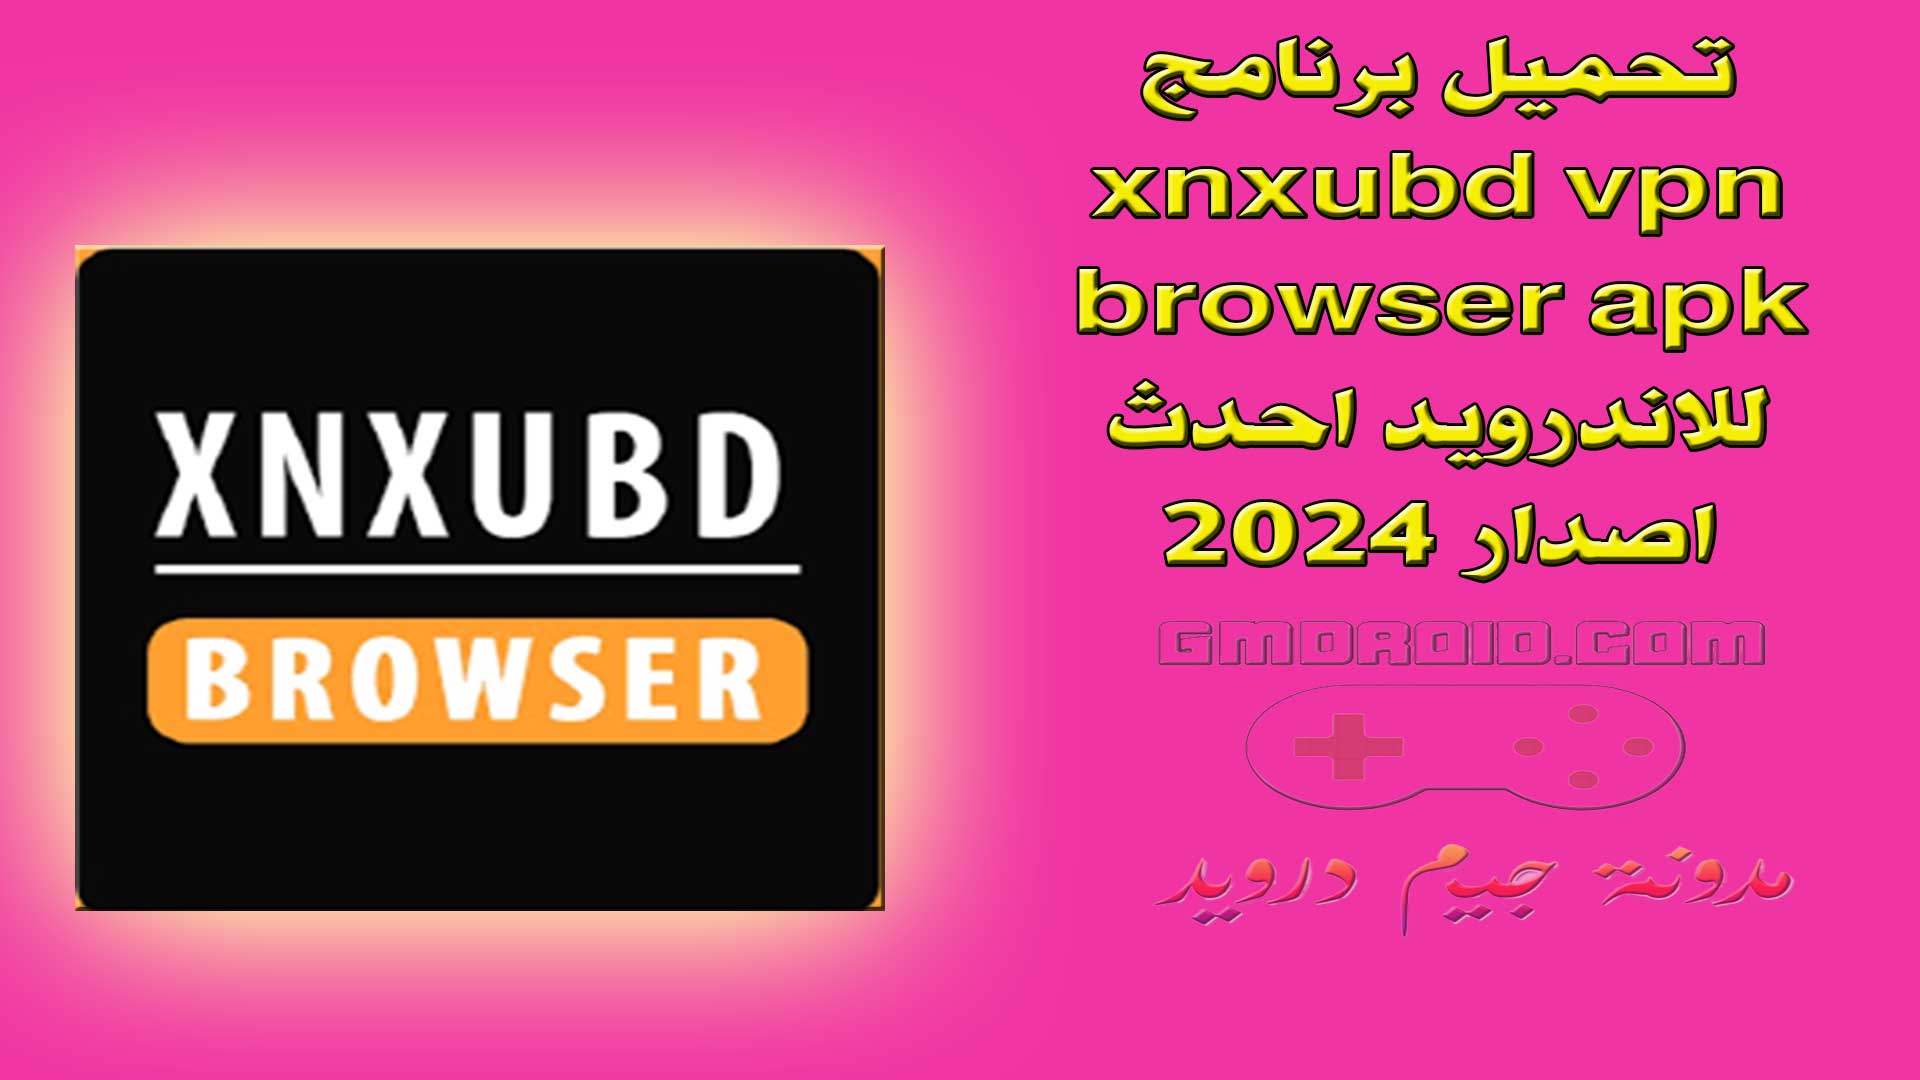 تحميل برنامج xnxubd vpn browser apk للاندرويد احدث اصدار 2024